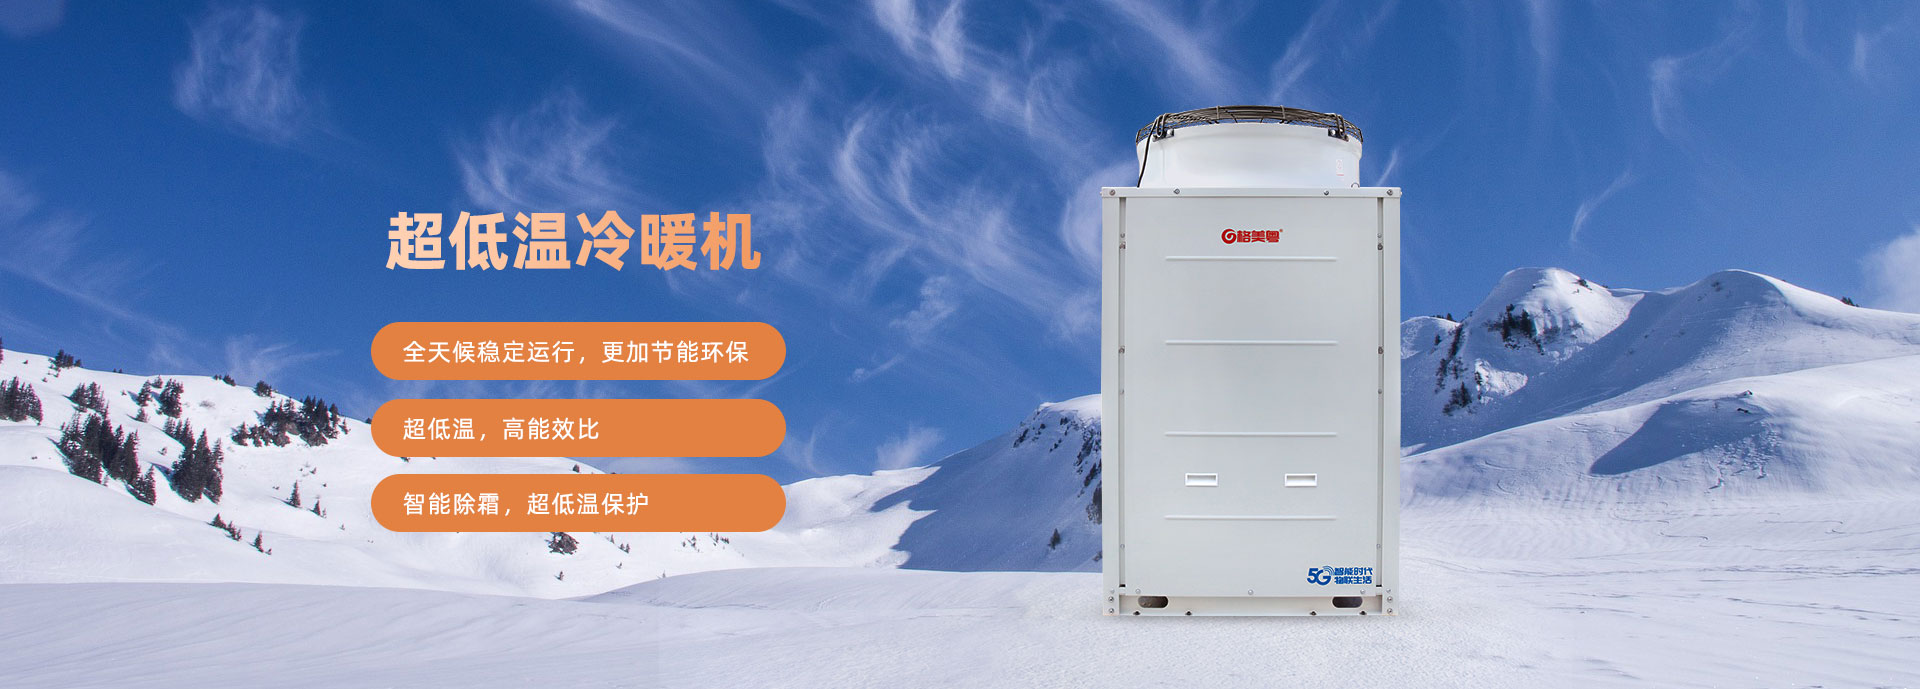 格美粤10PU型超低温空气能热泵采暖机参数